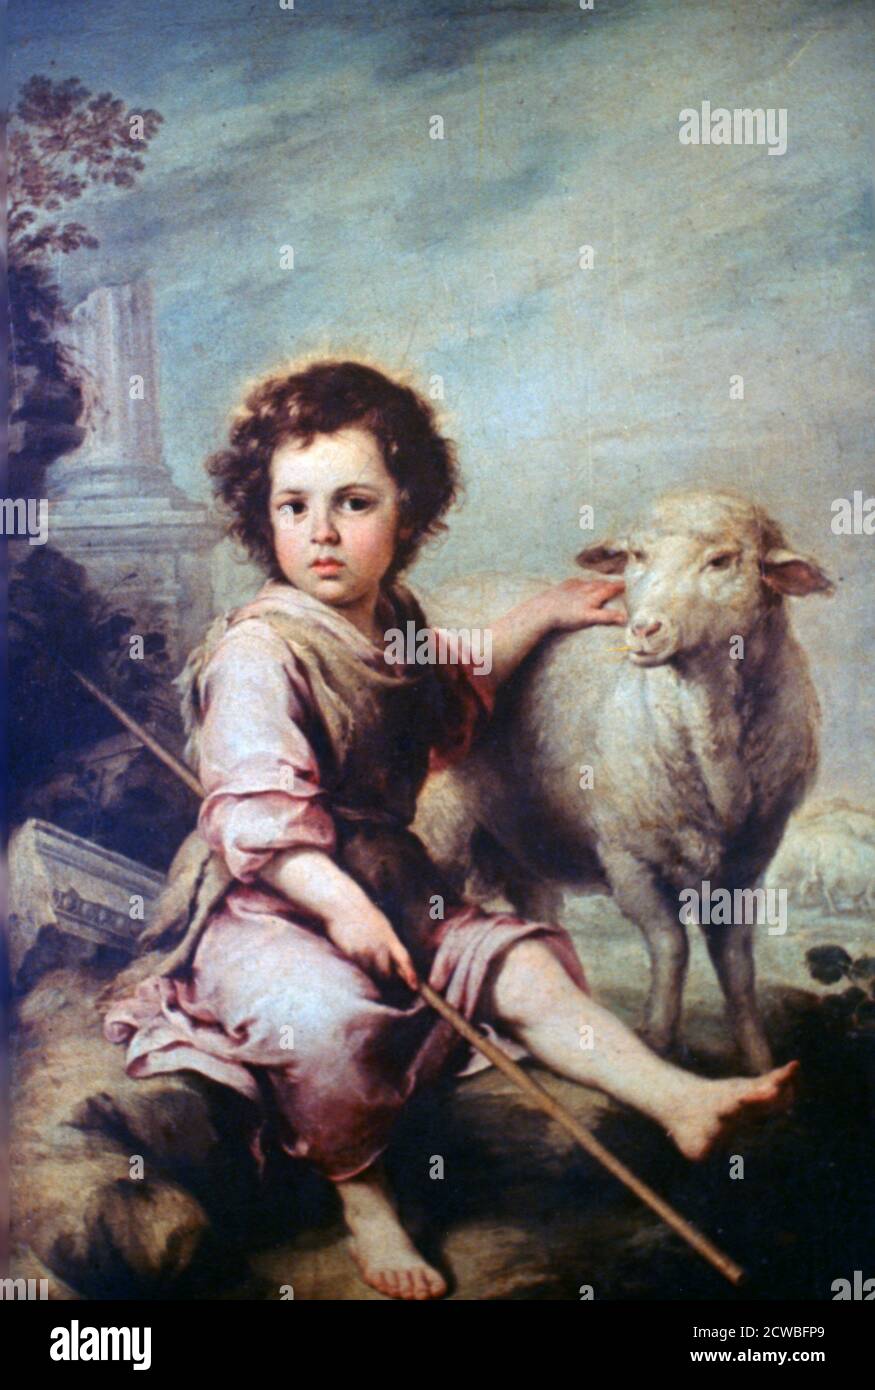 Le bon Berger, c1650. Artiste: Bartolome Esteban Murillo. Bartolome Esteban Murillo(1617-1682) était un peintre baroque espagnol, plus connu pour ses œuvres religieuses. Banque D'Images